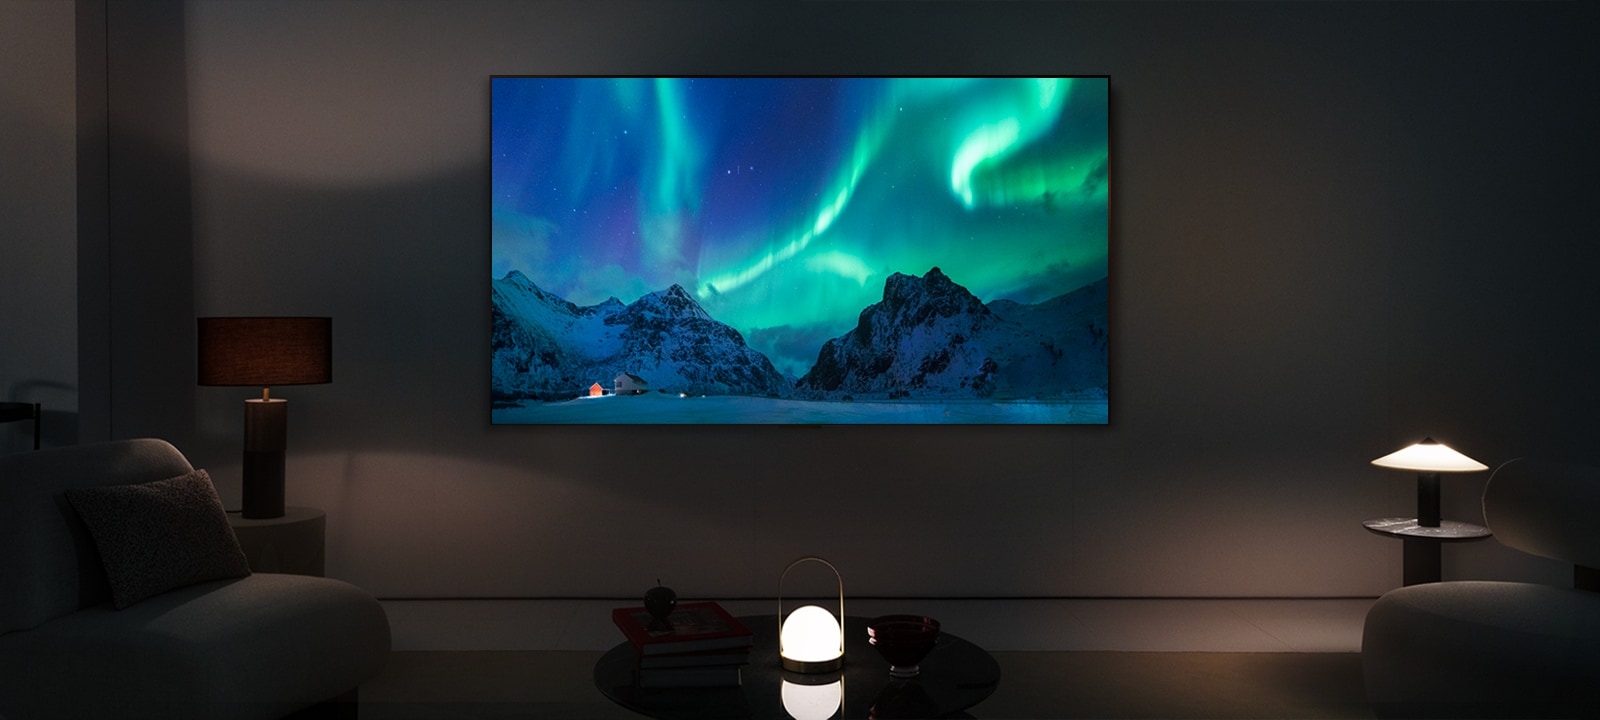 Uma imagem de uma TV OLED e uma Soundbar da LG em uma sala de estar moderna à noite. A imagem de uma aurora boreal é exibida com os níveis ideais de brilho.